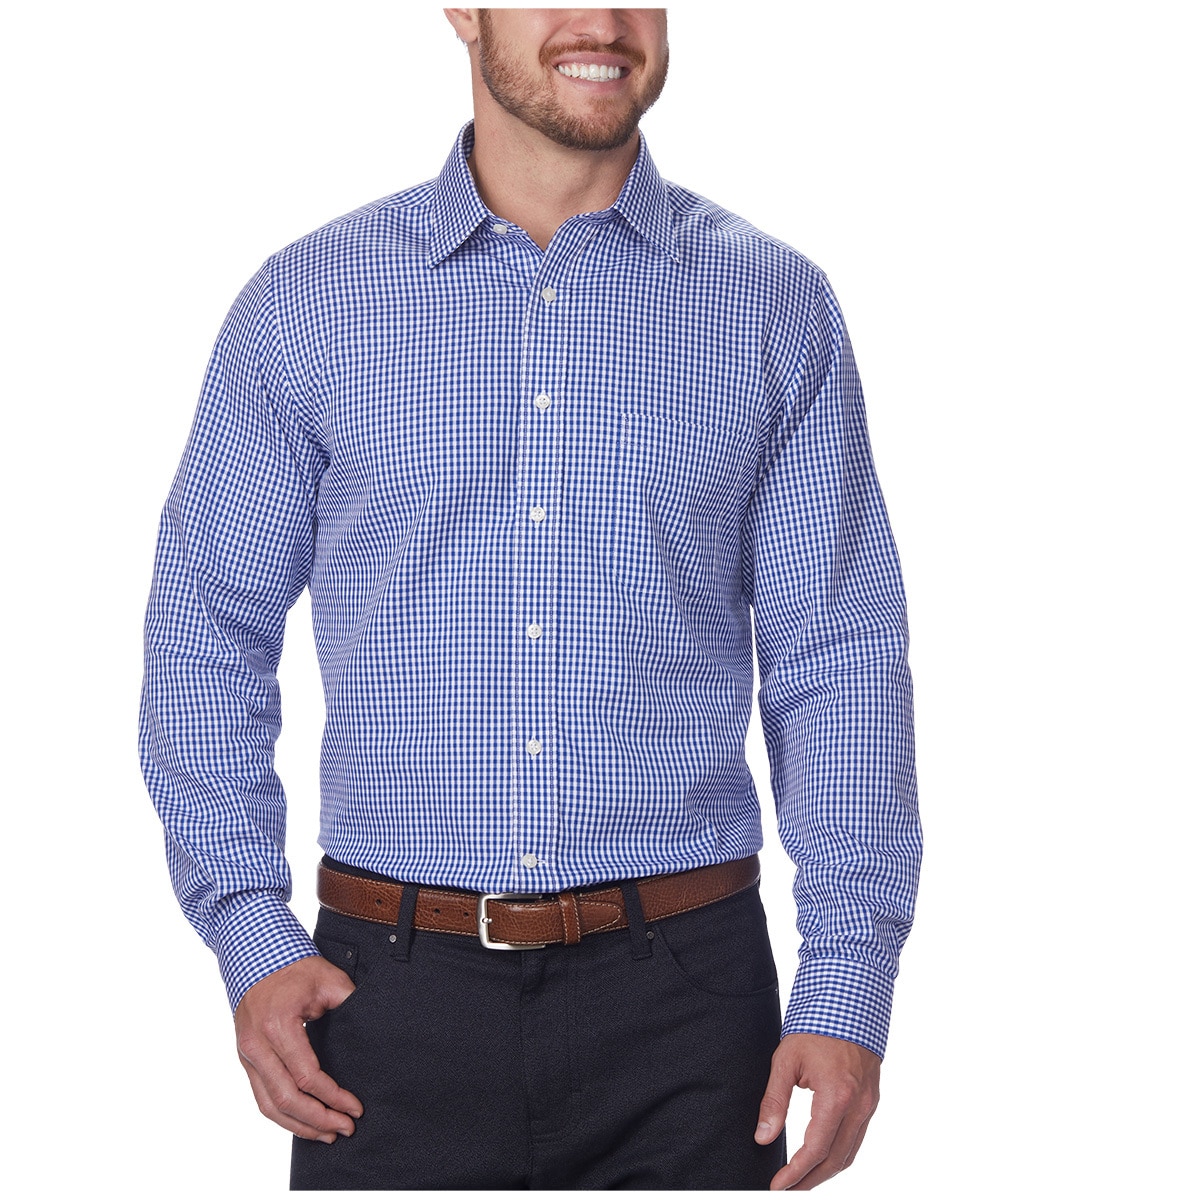 Kirkland Signature Men's Long Sleeve Dress Shirt Blue